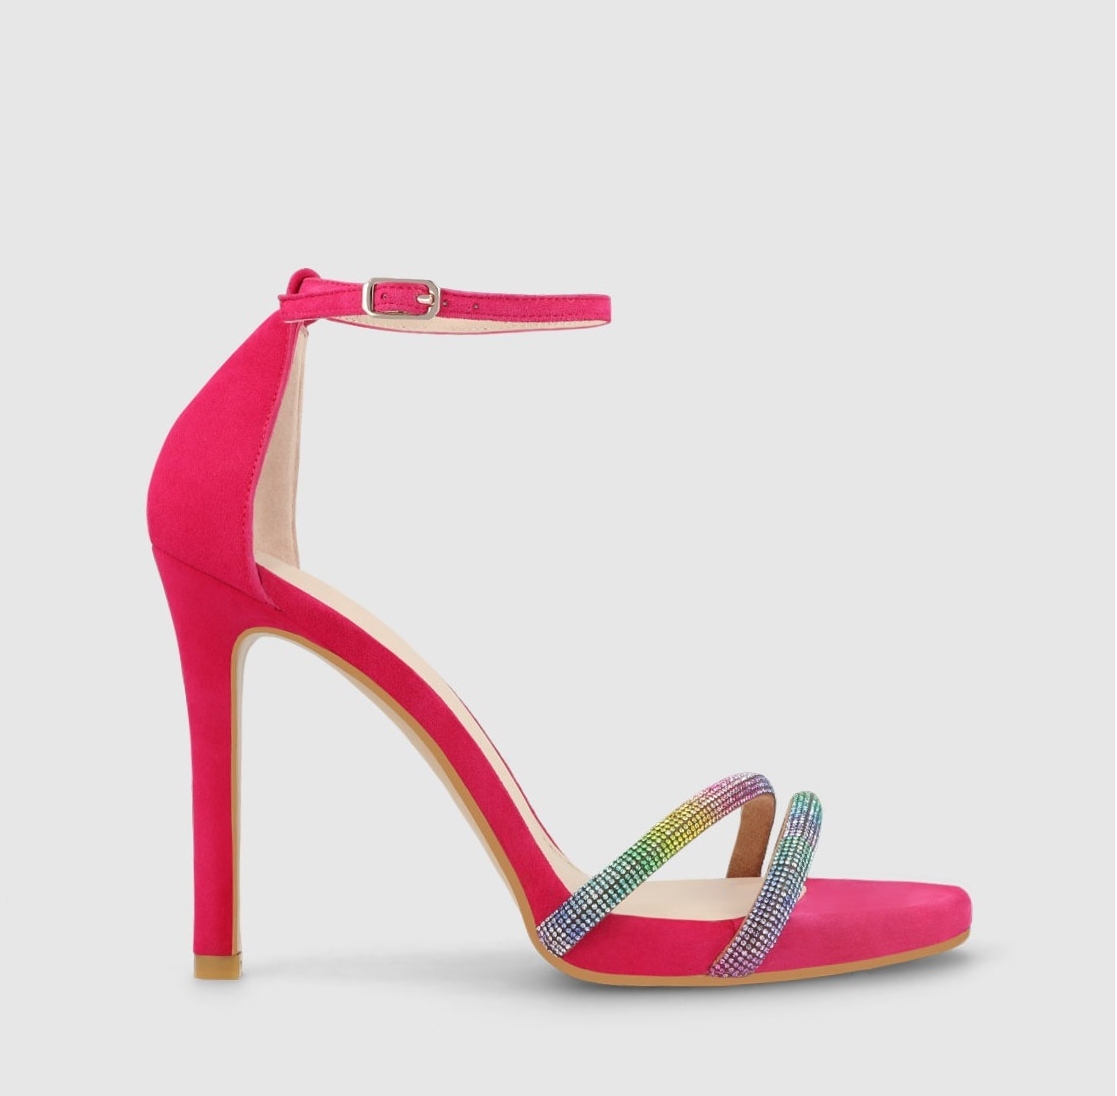 ALT: 8 sandalias de tacn alto elegantes para tus looks de invitada, de Zara a Massimo Dutti